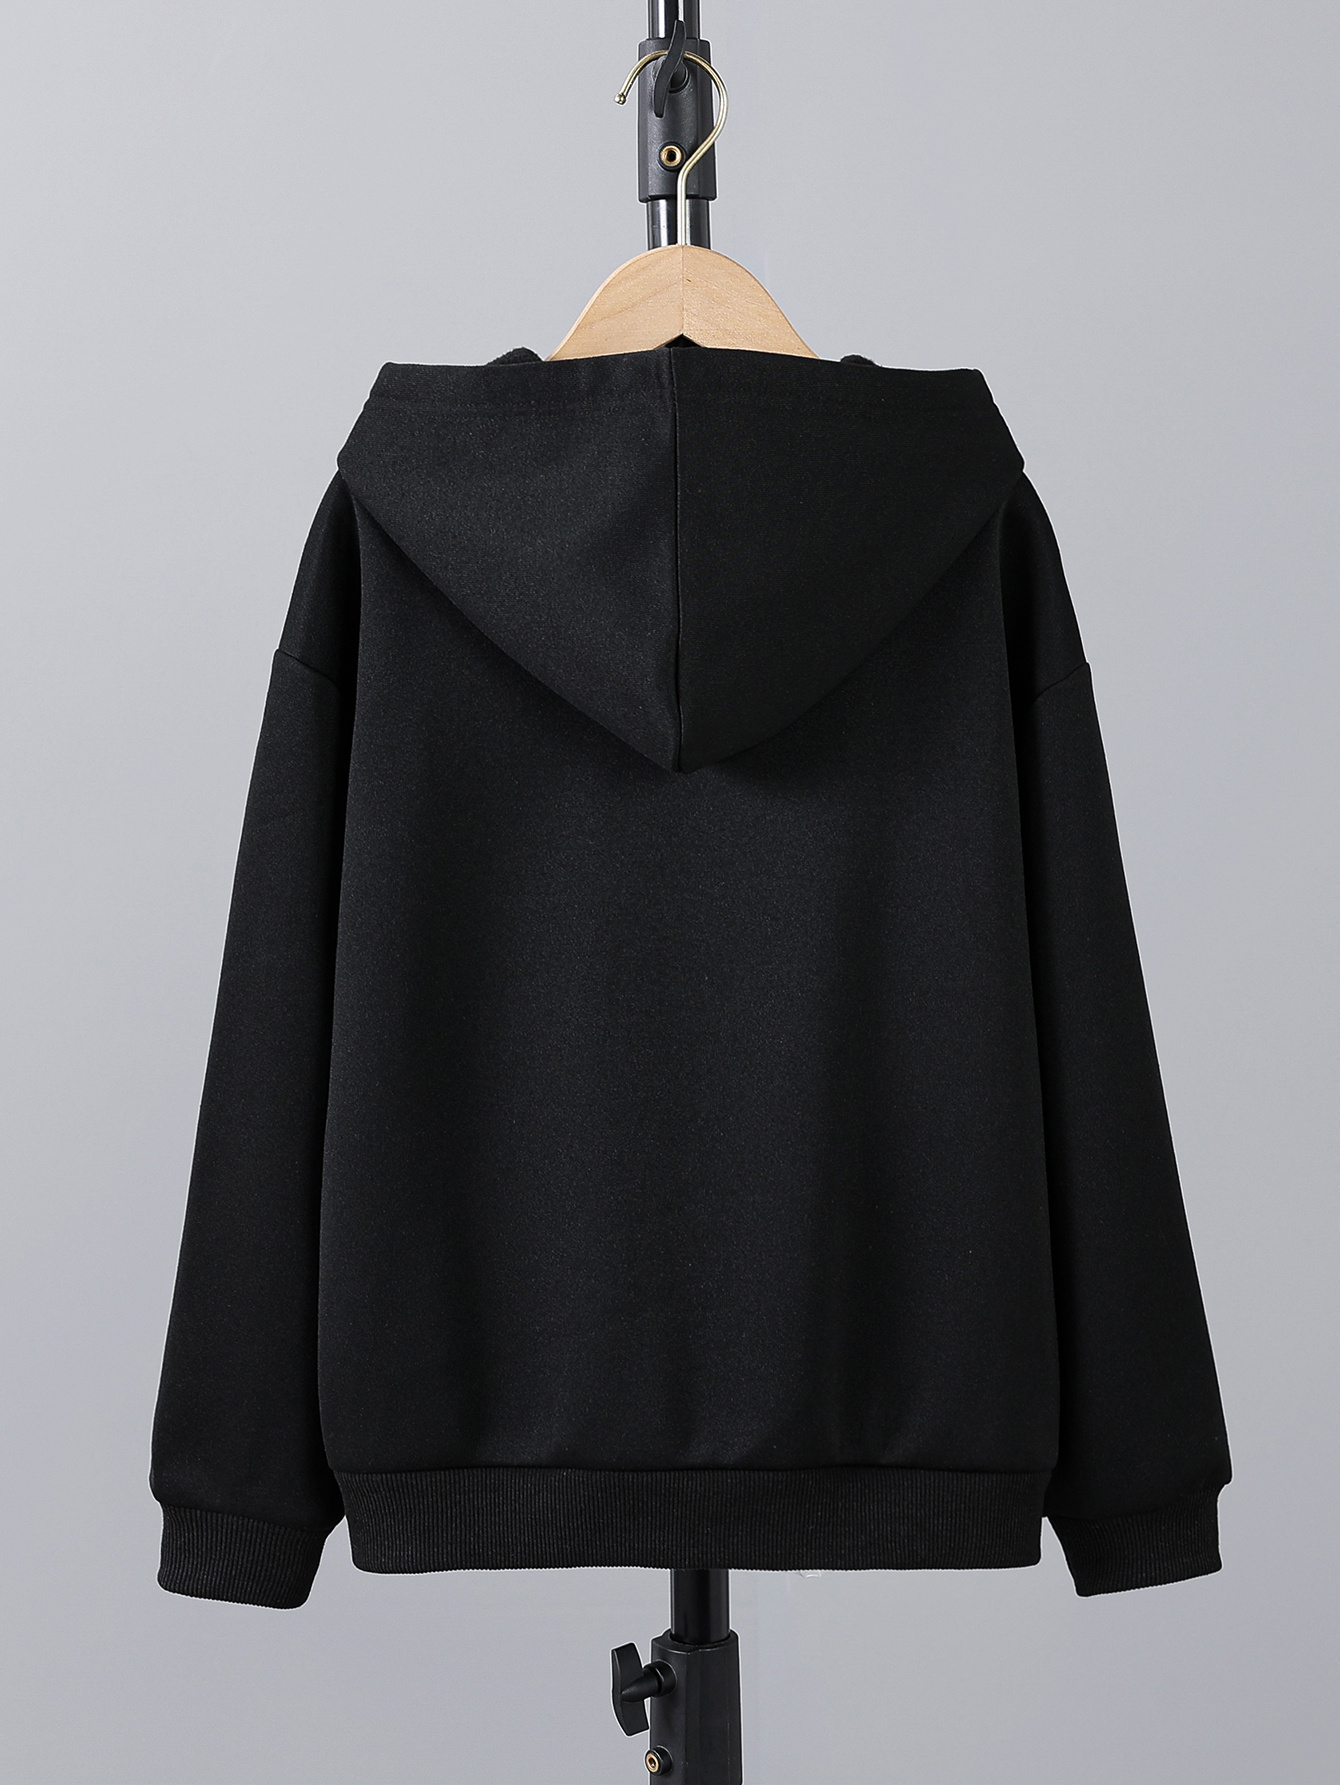 Lucky Brand Girls' Pullover Fleece Hoodie Sweatshirt in Black